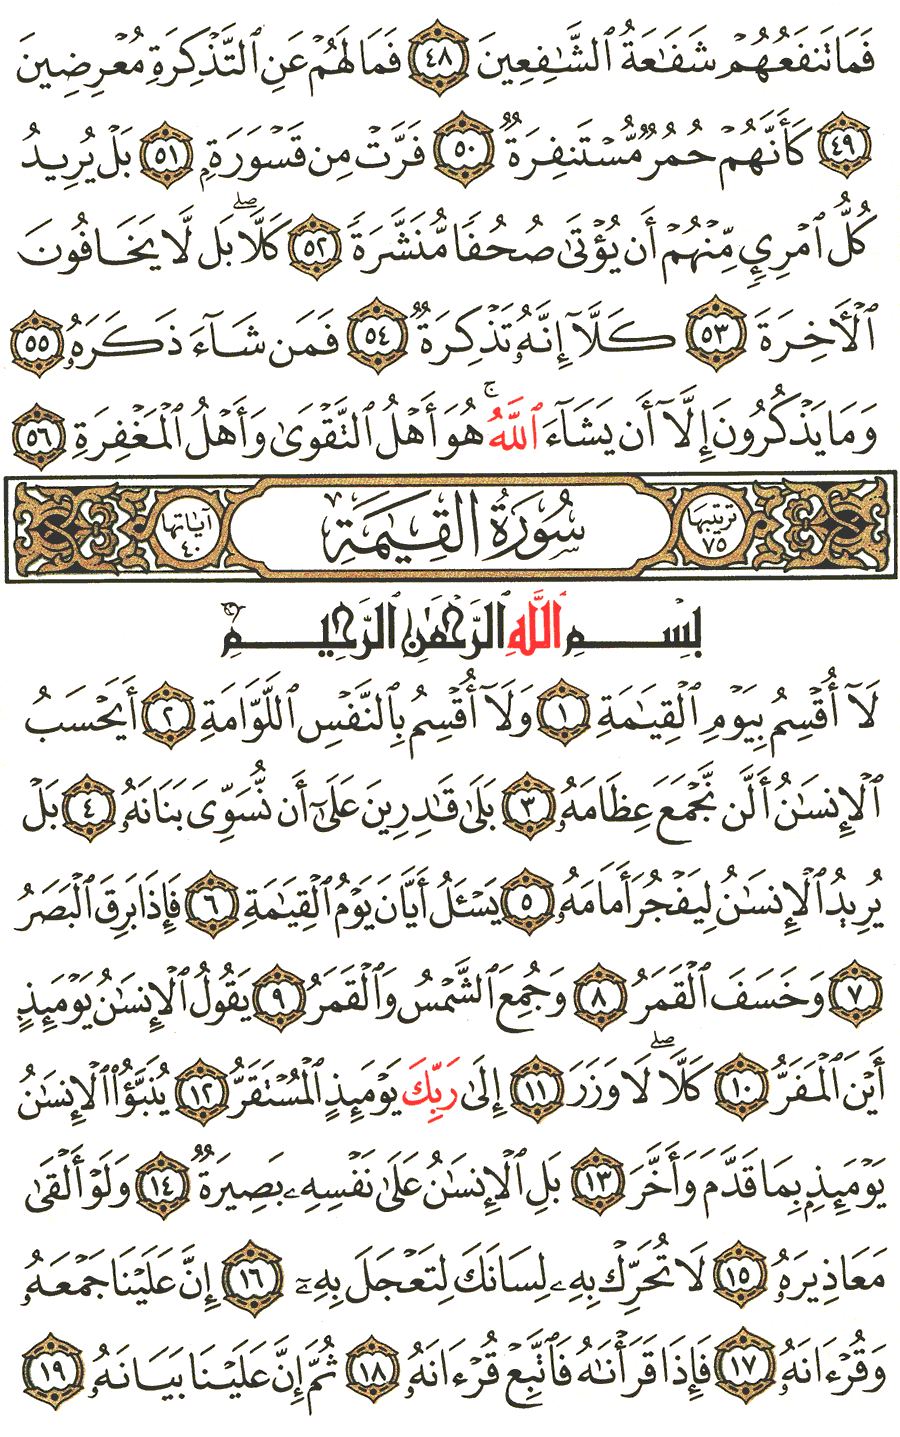 الصفحة رقم 577 من القرآن الكريم مكتوبة من المصحف